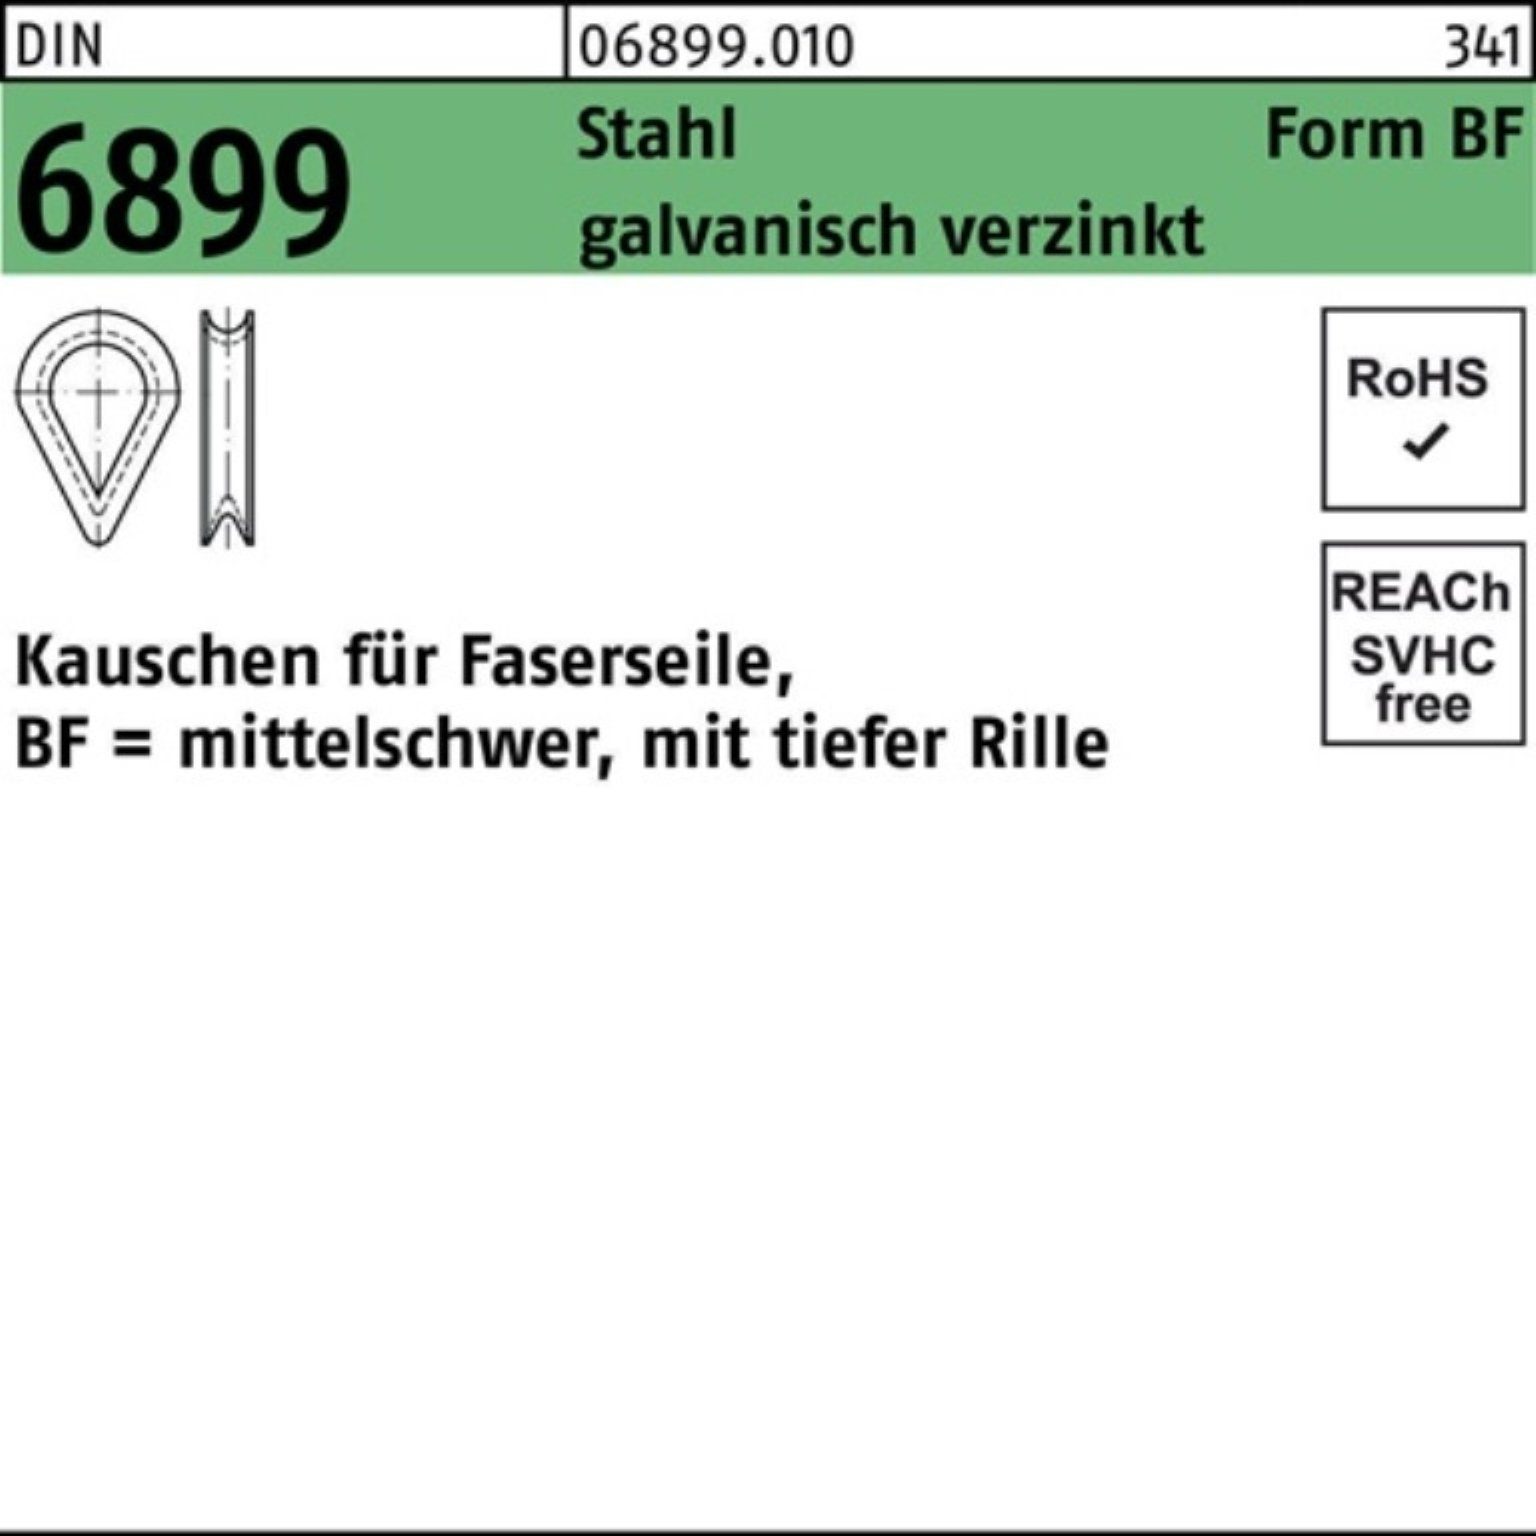 Kauschen Pack Reyher 6899 Stahl Stück DIN BF 11/RW12 50 100er galv.verz. Kausche DIN